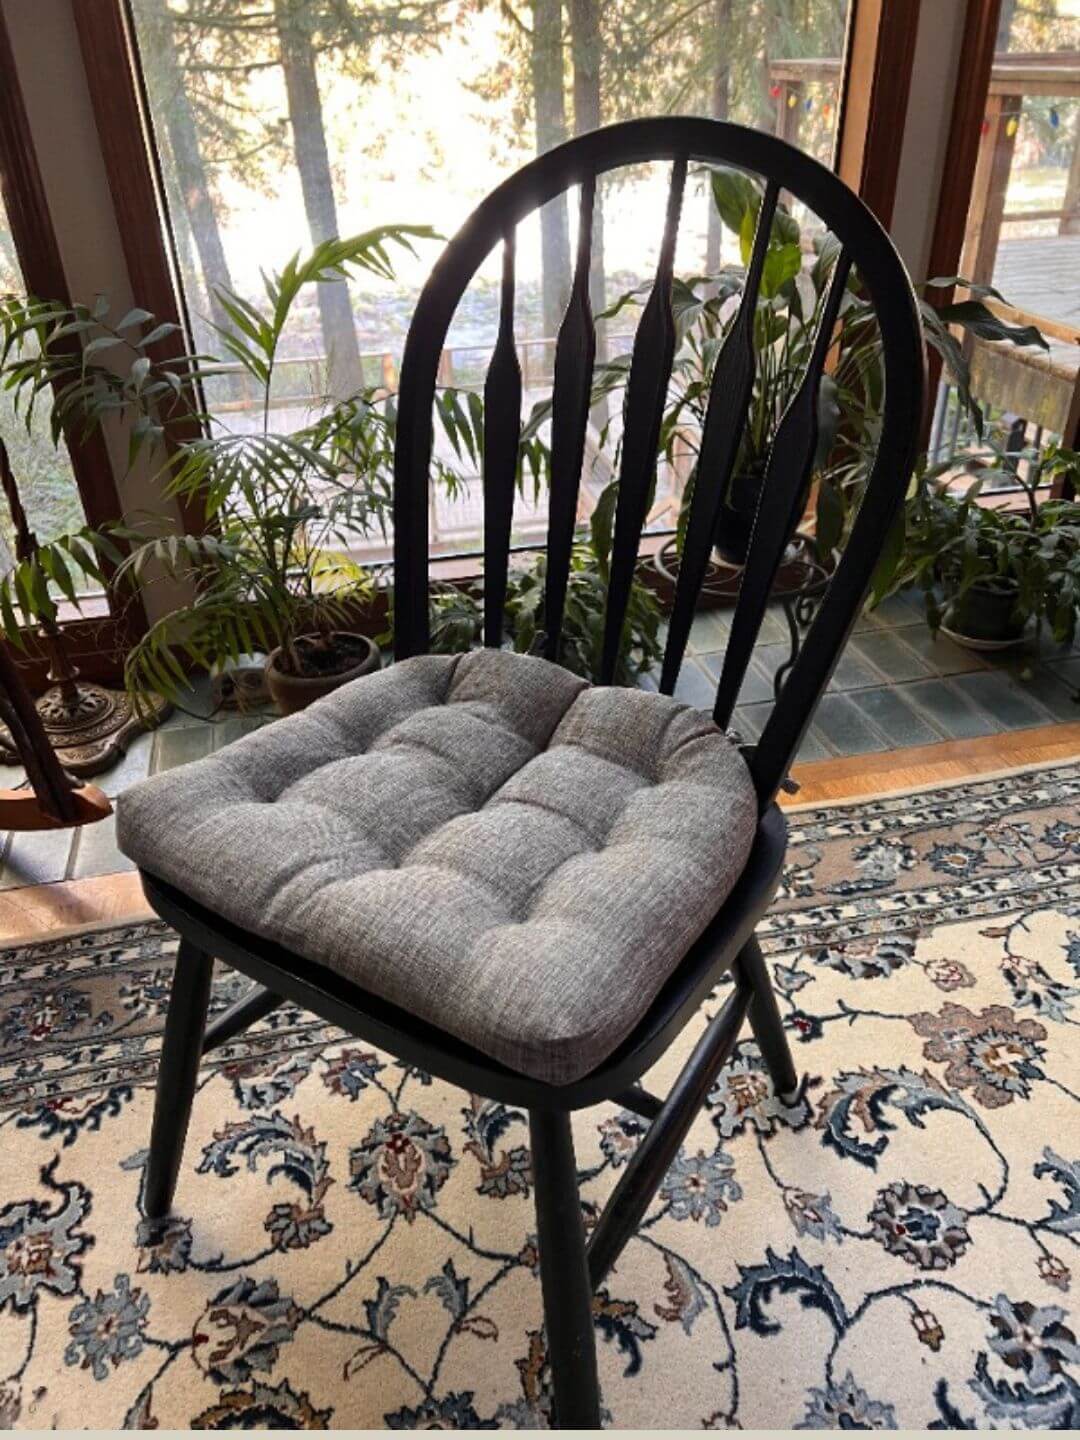 https://barnetthomedecor.com/cdn/shop/files/windsor-chair-cushions--barnett-home-decor_37821213-5b3c-4290-96f9-275f5390e485.jpg?v=1661137470&width=1500